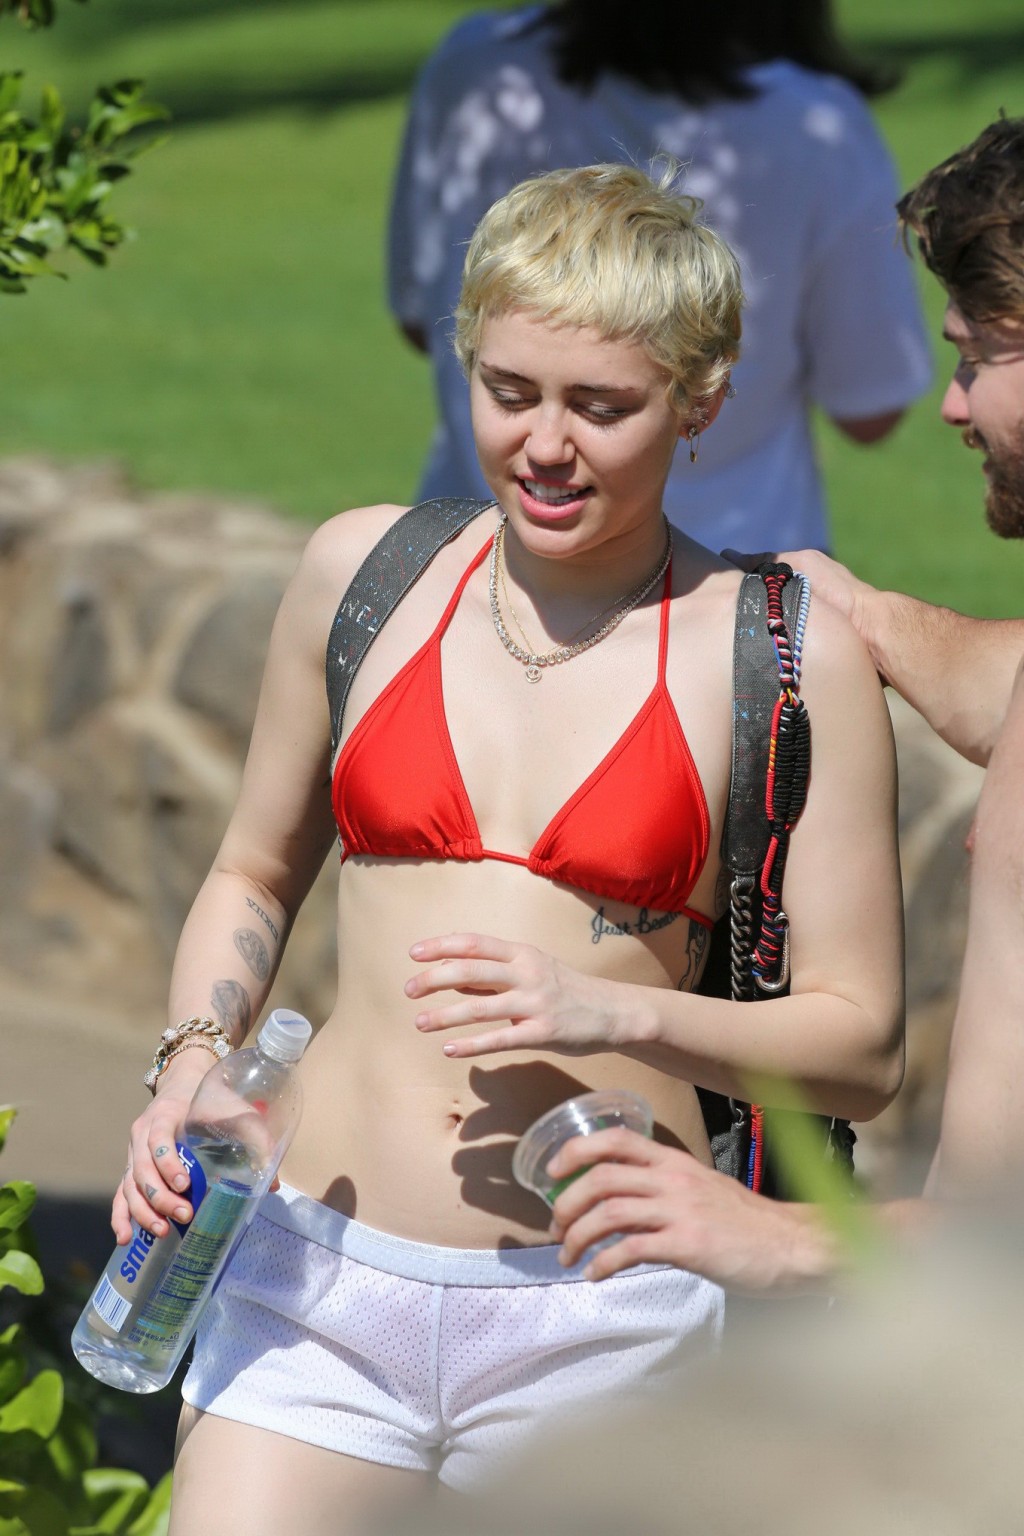 Miley cyrus con un diminuto bikini rojo y unos shorts transparentes en sus vacaciones en hawai
 #75175145